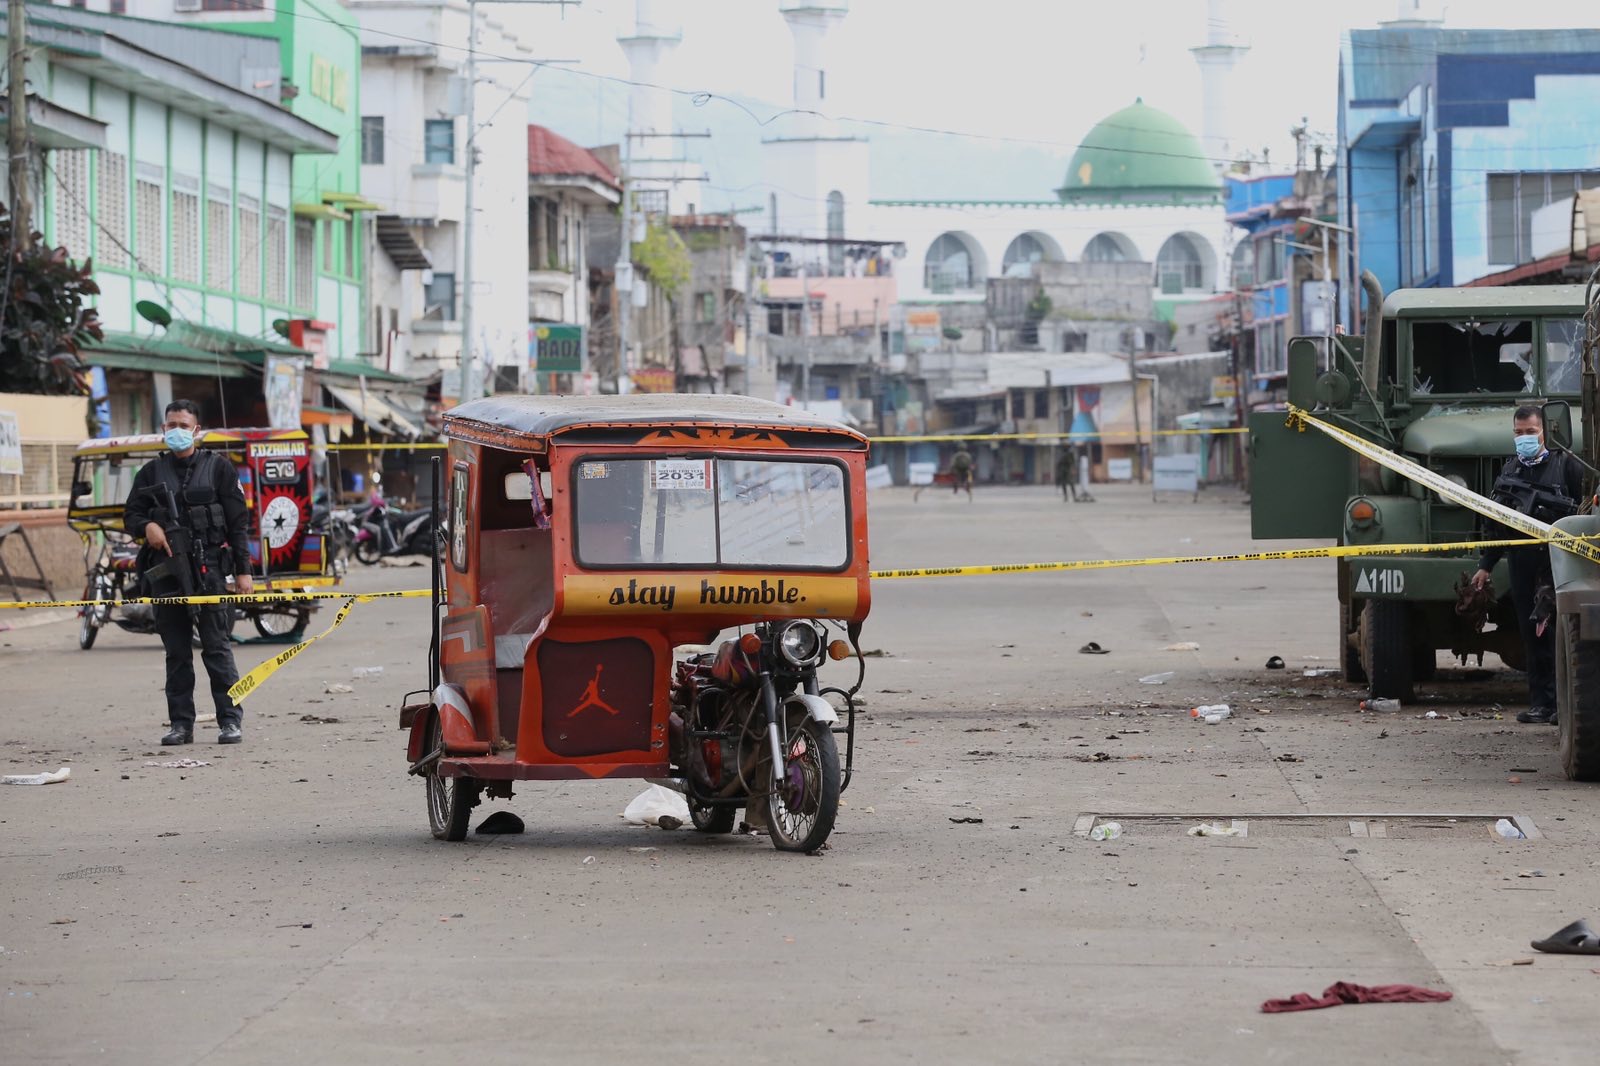 菲律宾总统杜特尔特视察霍洛市连环爆炸现场